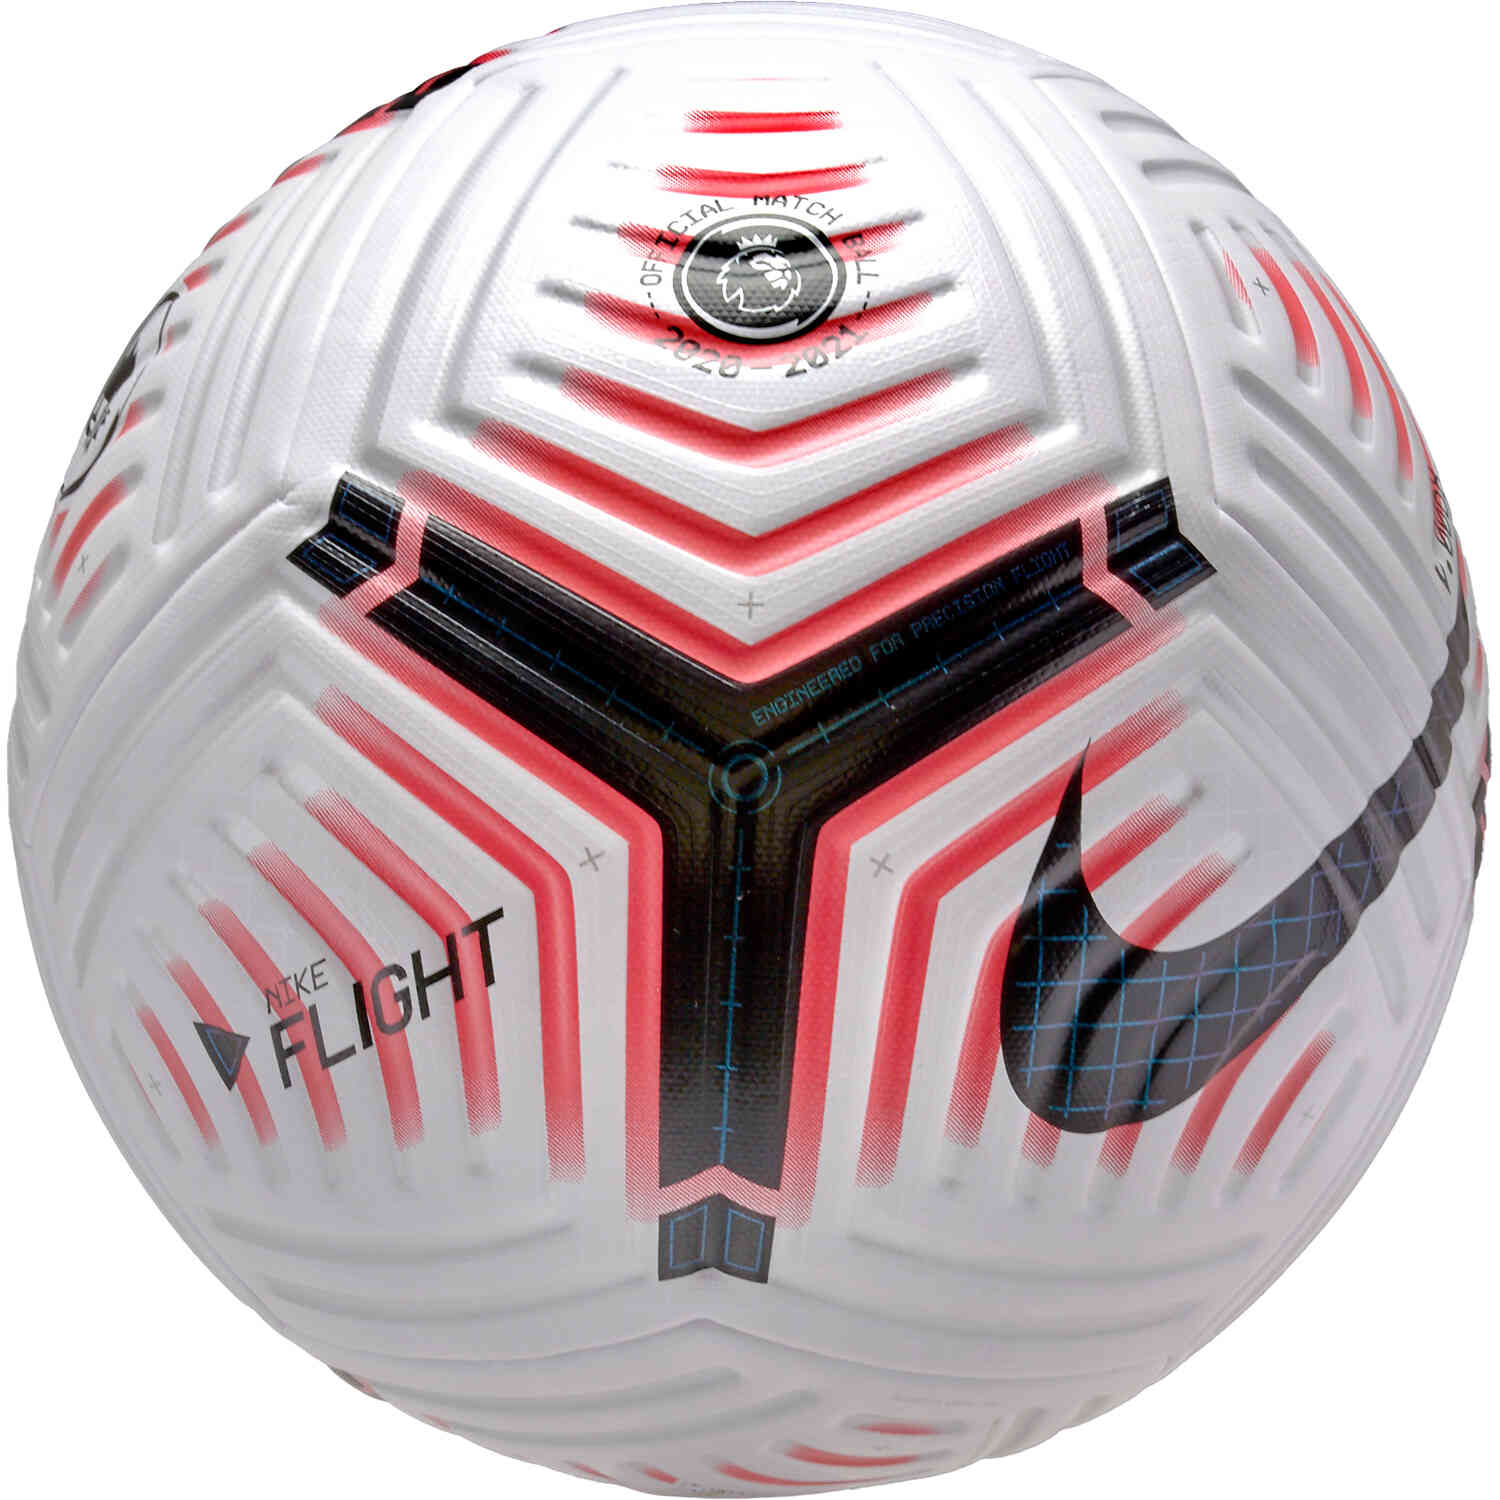 nike flight soccer ball for sale